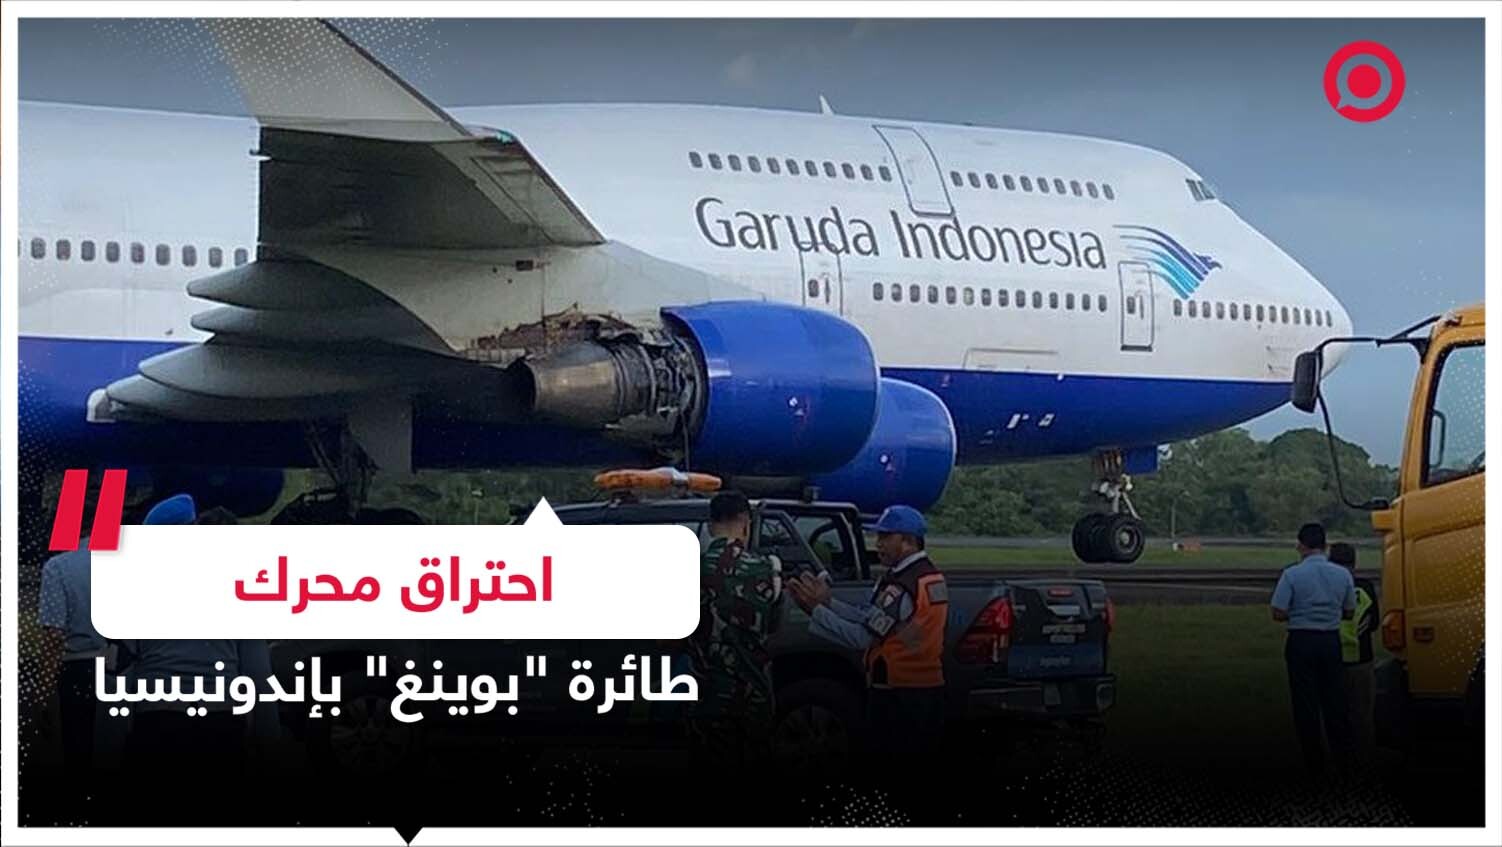 حادثة جديدة لطائرة طراز "بوينغ 747" تابعة لخطوط "غارودا" الإندونيسية